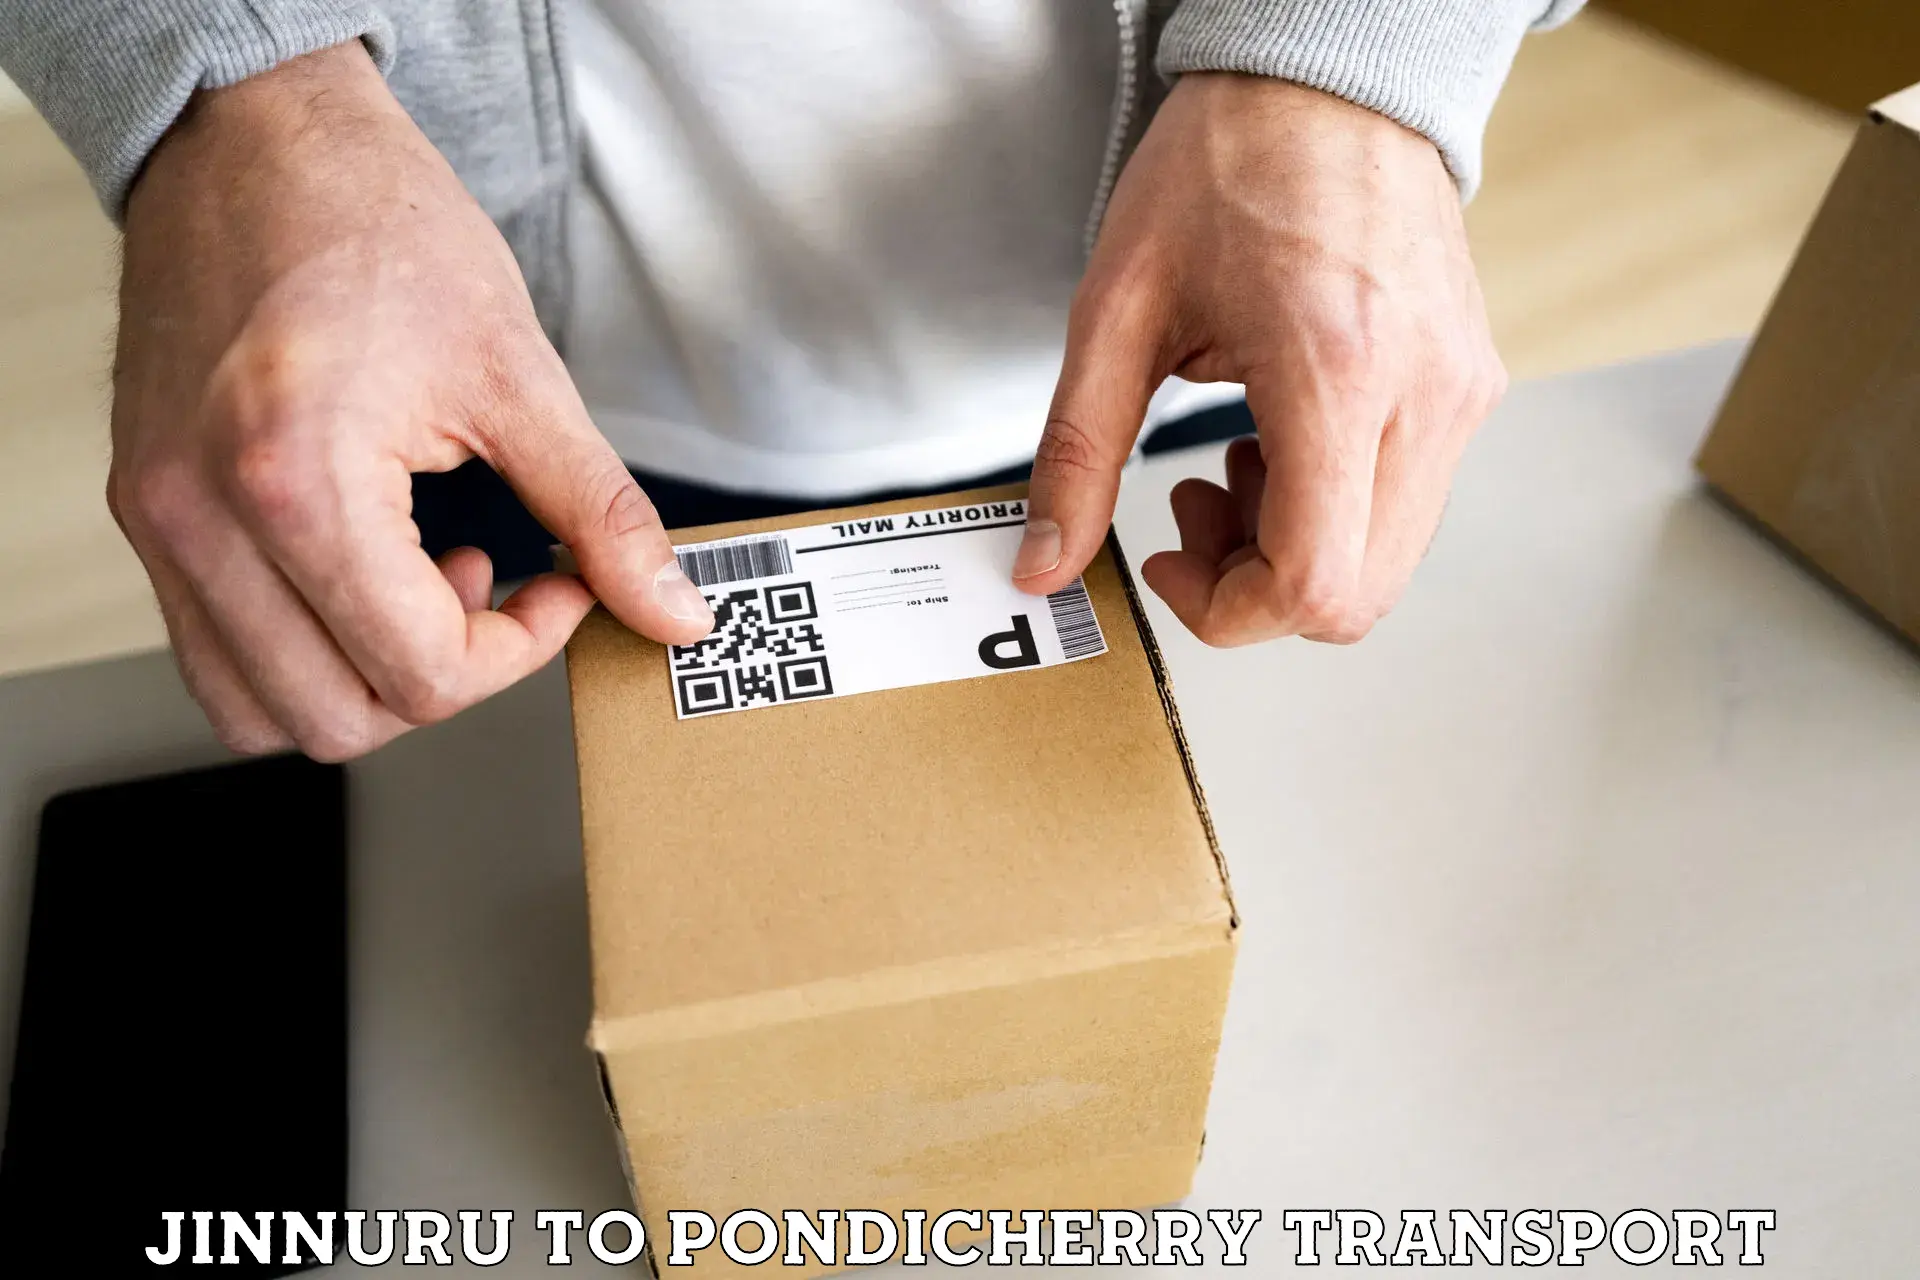 Online transport service Jinnuru to Pondicherry